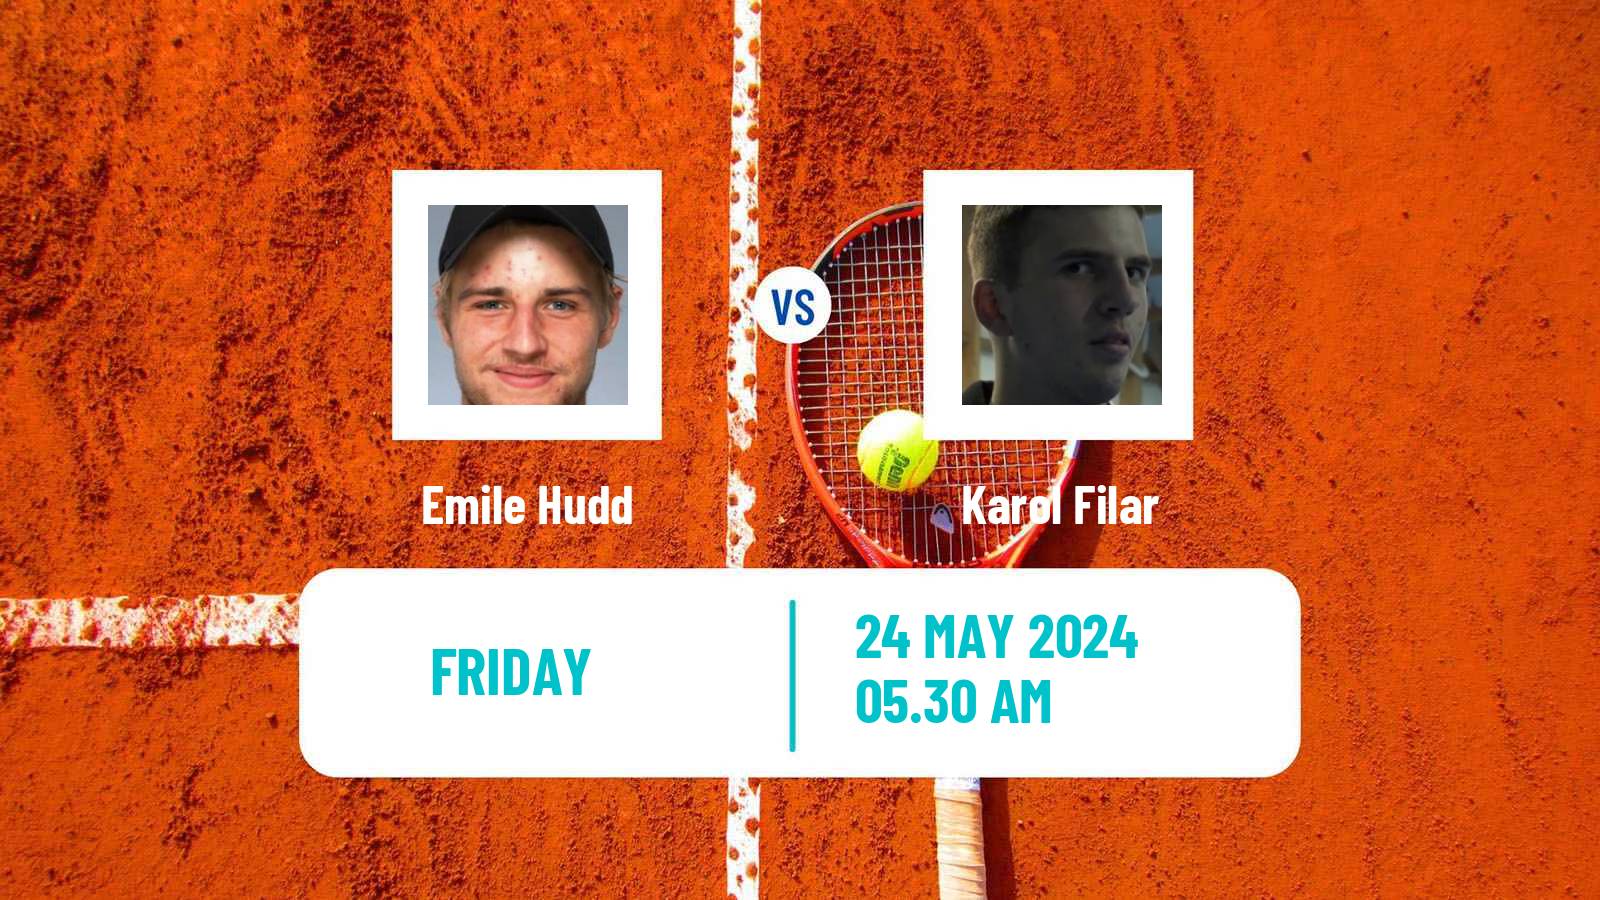 Tennis ITF M15 Celje Men Emile Hudd - Karol Filar